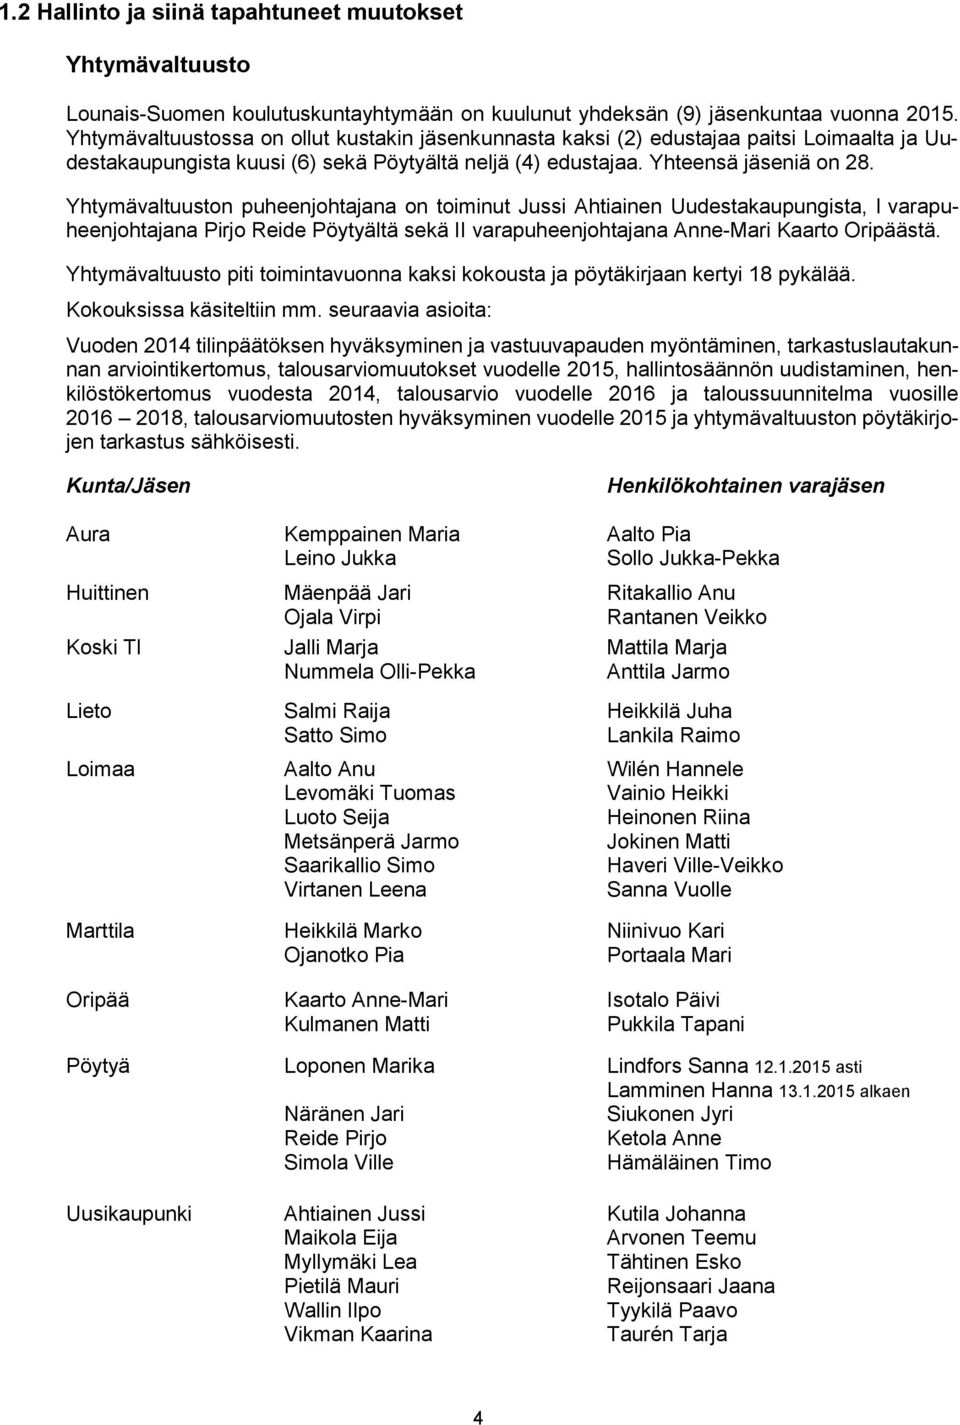 Yhtymävaltuuston puheenjohtajana on toiminut Jussi Ahtiainen Uudestakaupungista, I varapuheenjohtajana Pirjo Reide Pöytyältä sekä II varapuheenjohtajana Anne-Mari Kaarto Oripäästä.